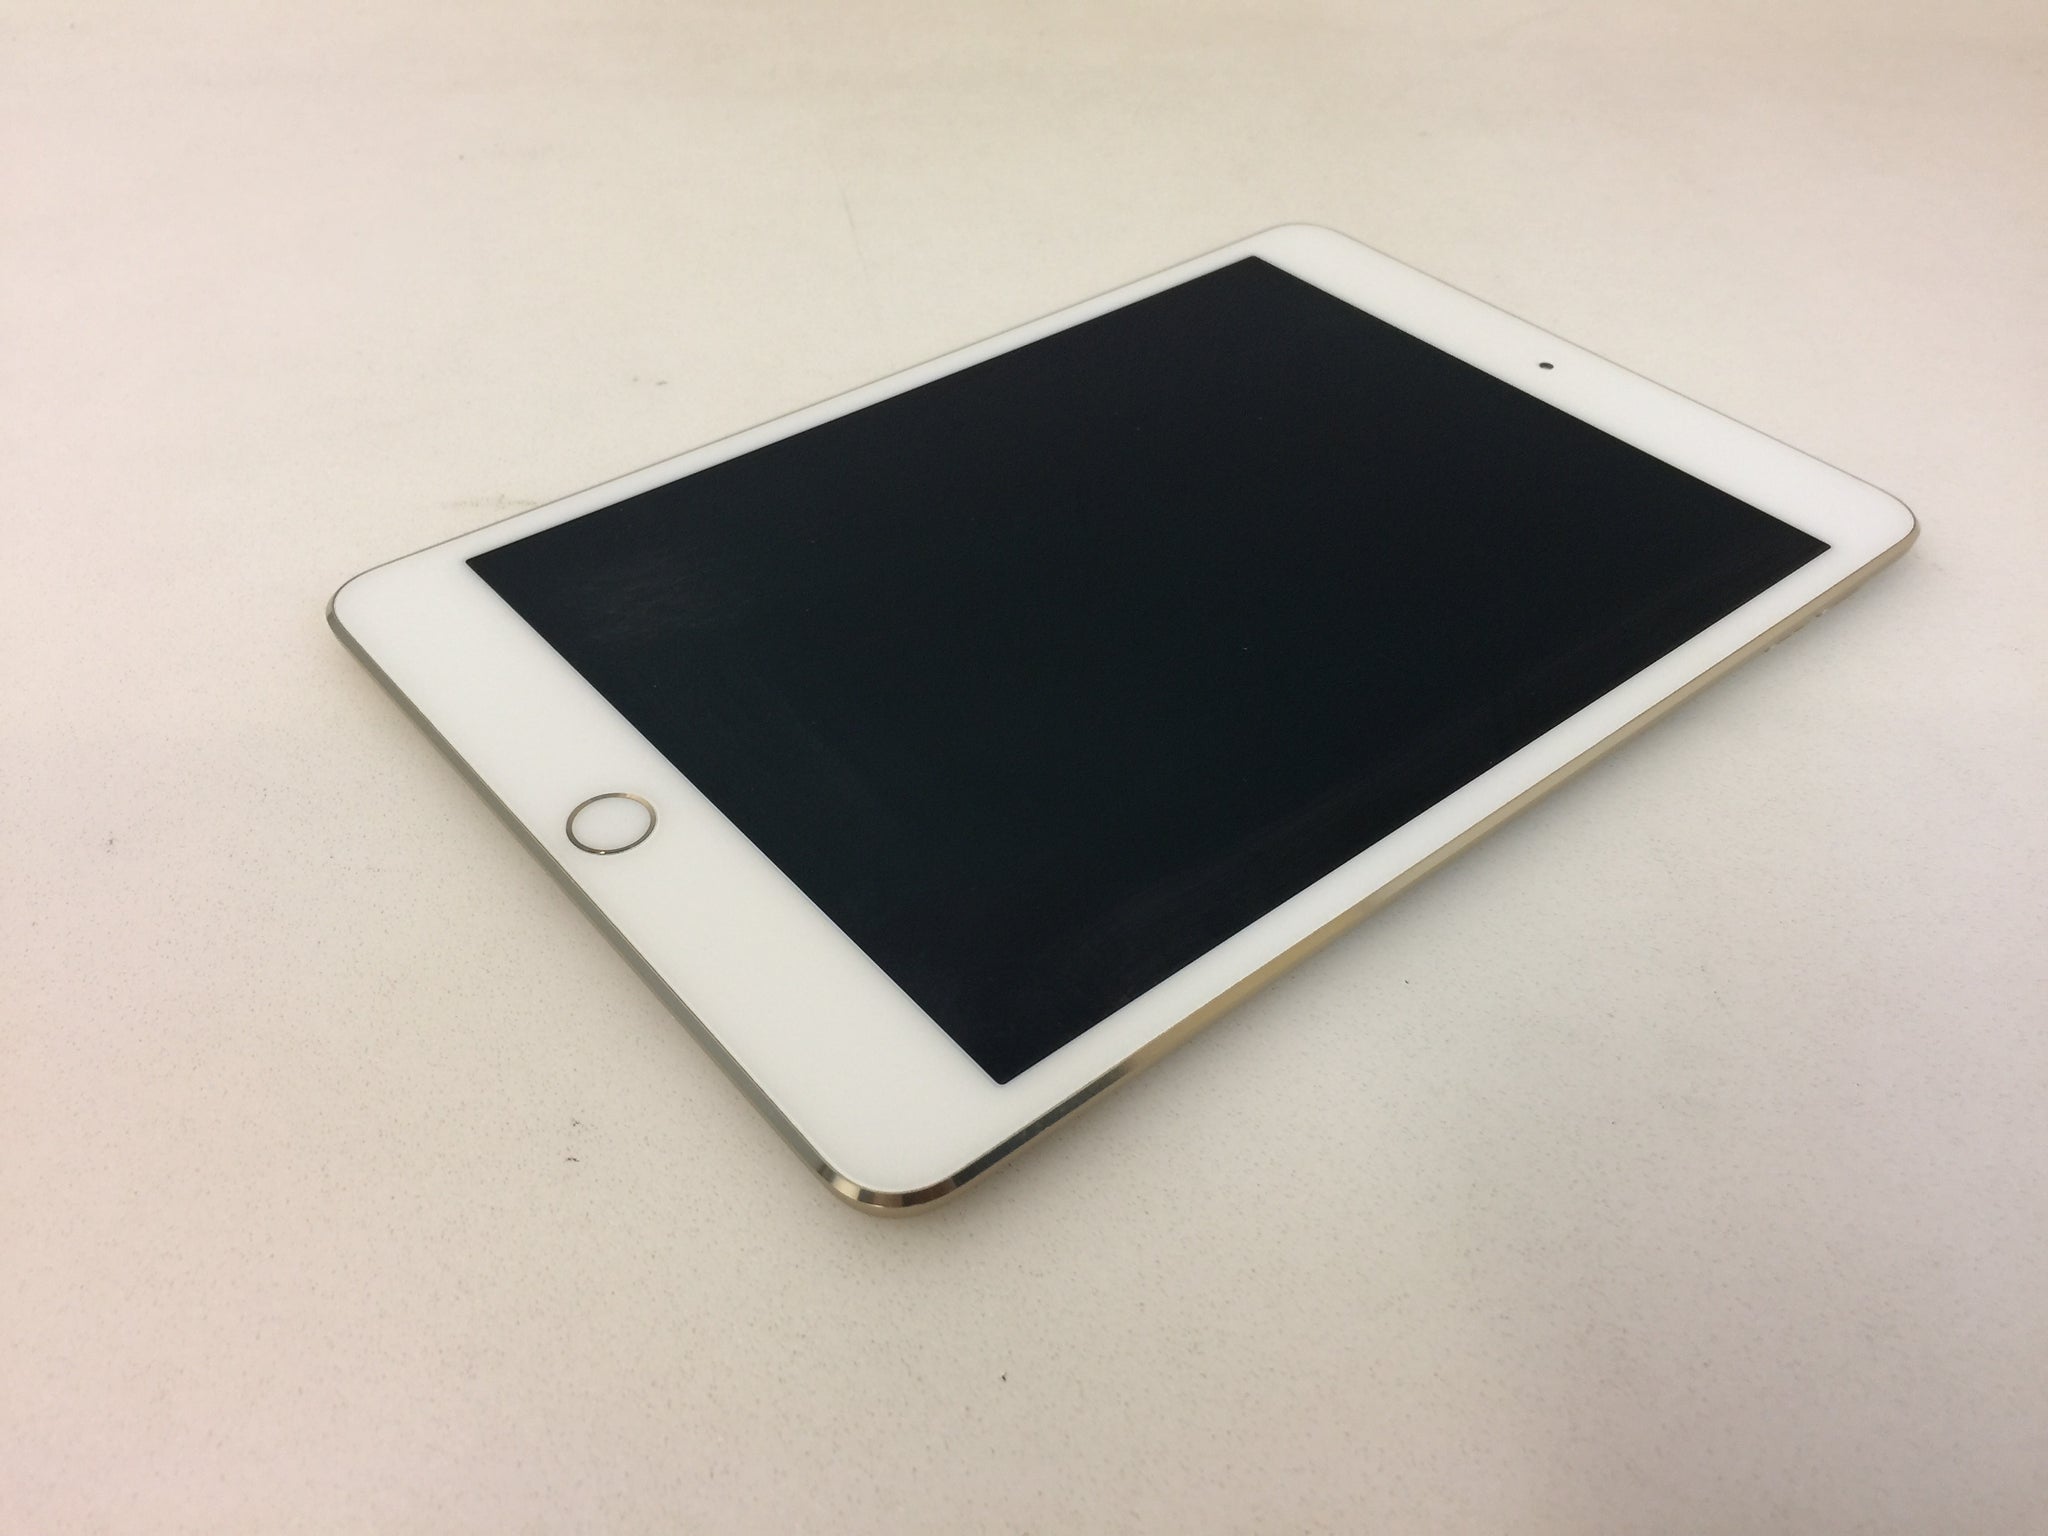 Apple iPad mini 4 A1538 16GB, Wi-Fi, 7.9in Tablet - Gold – NT